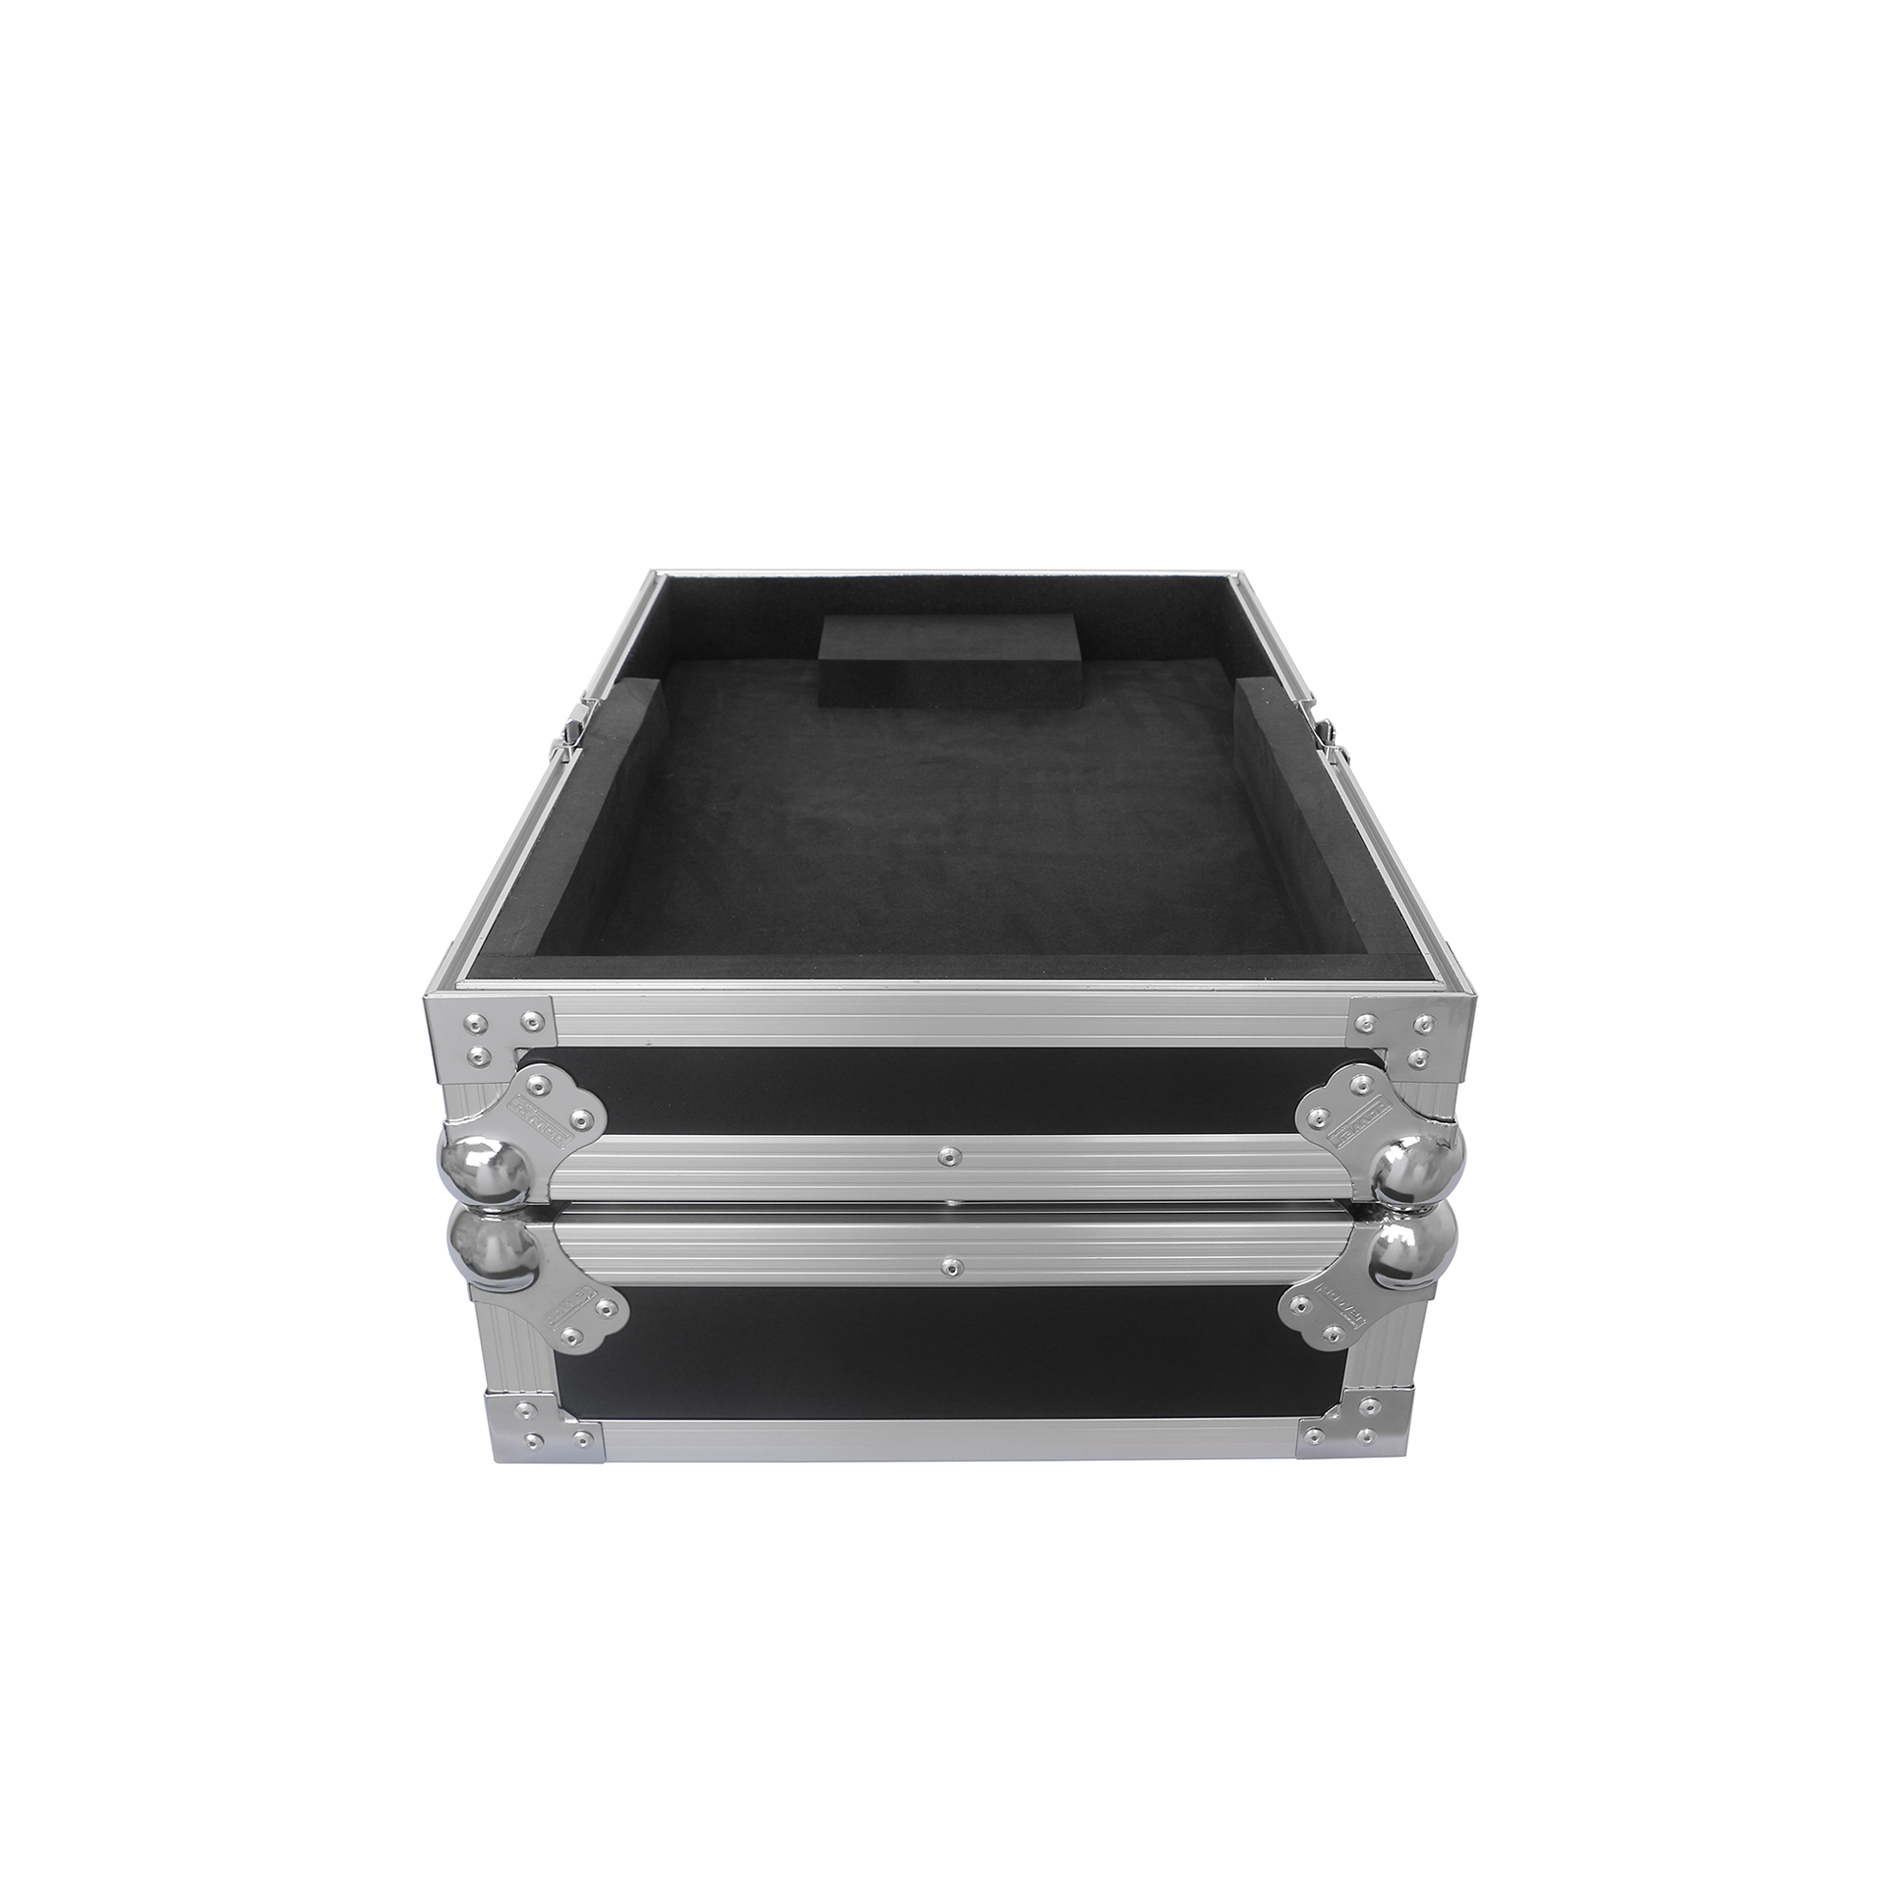 Power Acoustics Fcm Dm3s - Mixer case - Variation 1